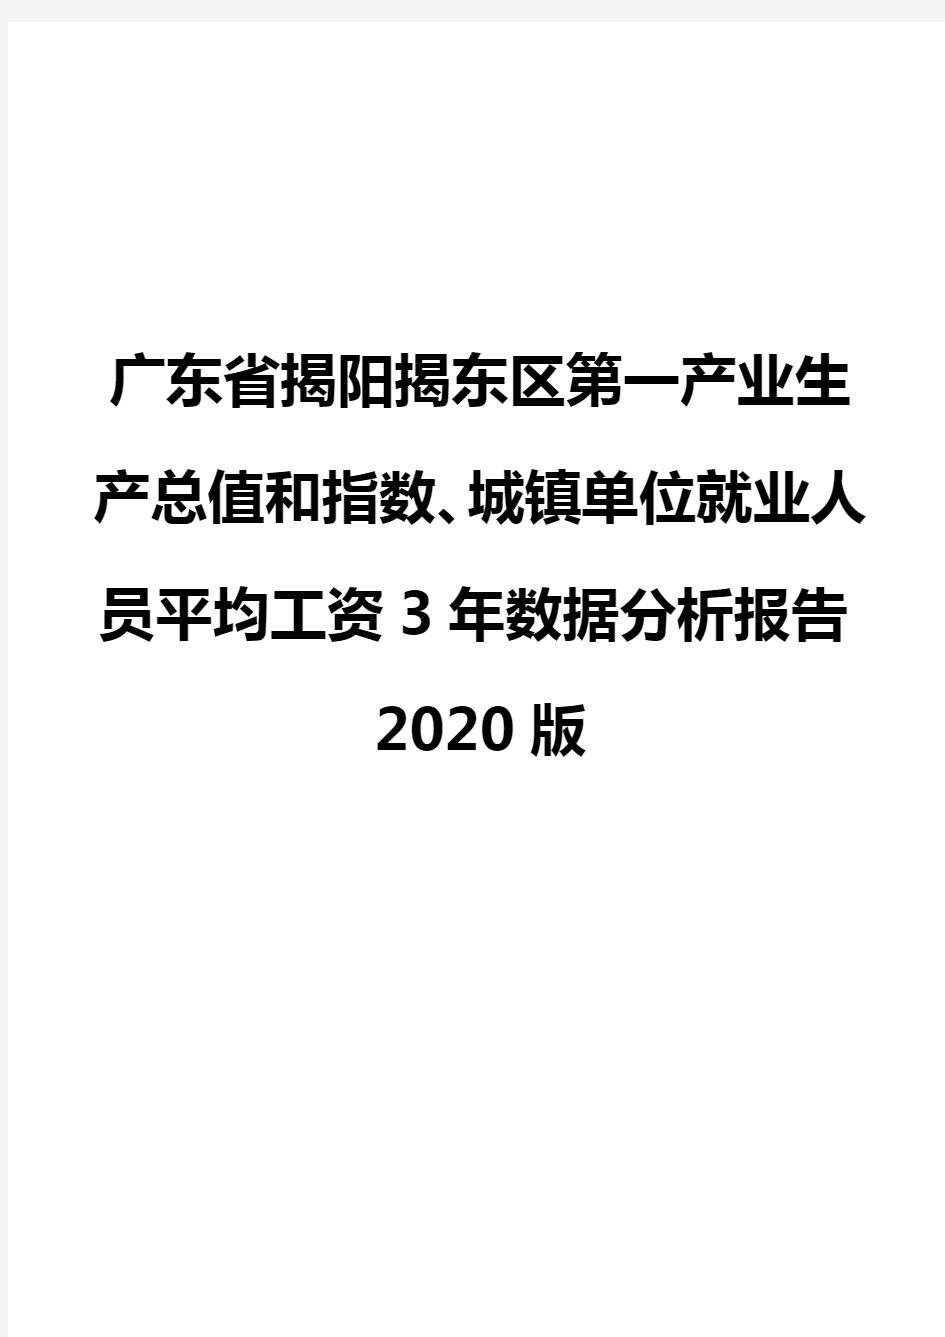 广东省揭阳揭东区第一产业生产总值和指数、城镇单位就业人员平均工资3年数据分析报告2020版